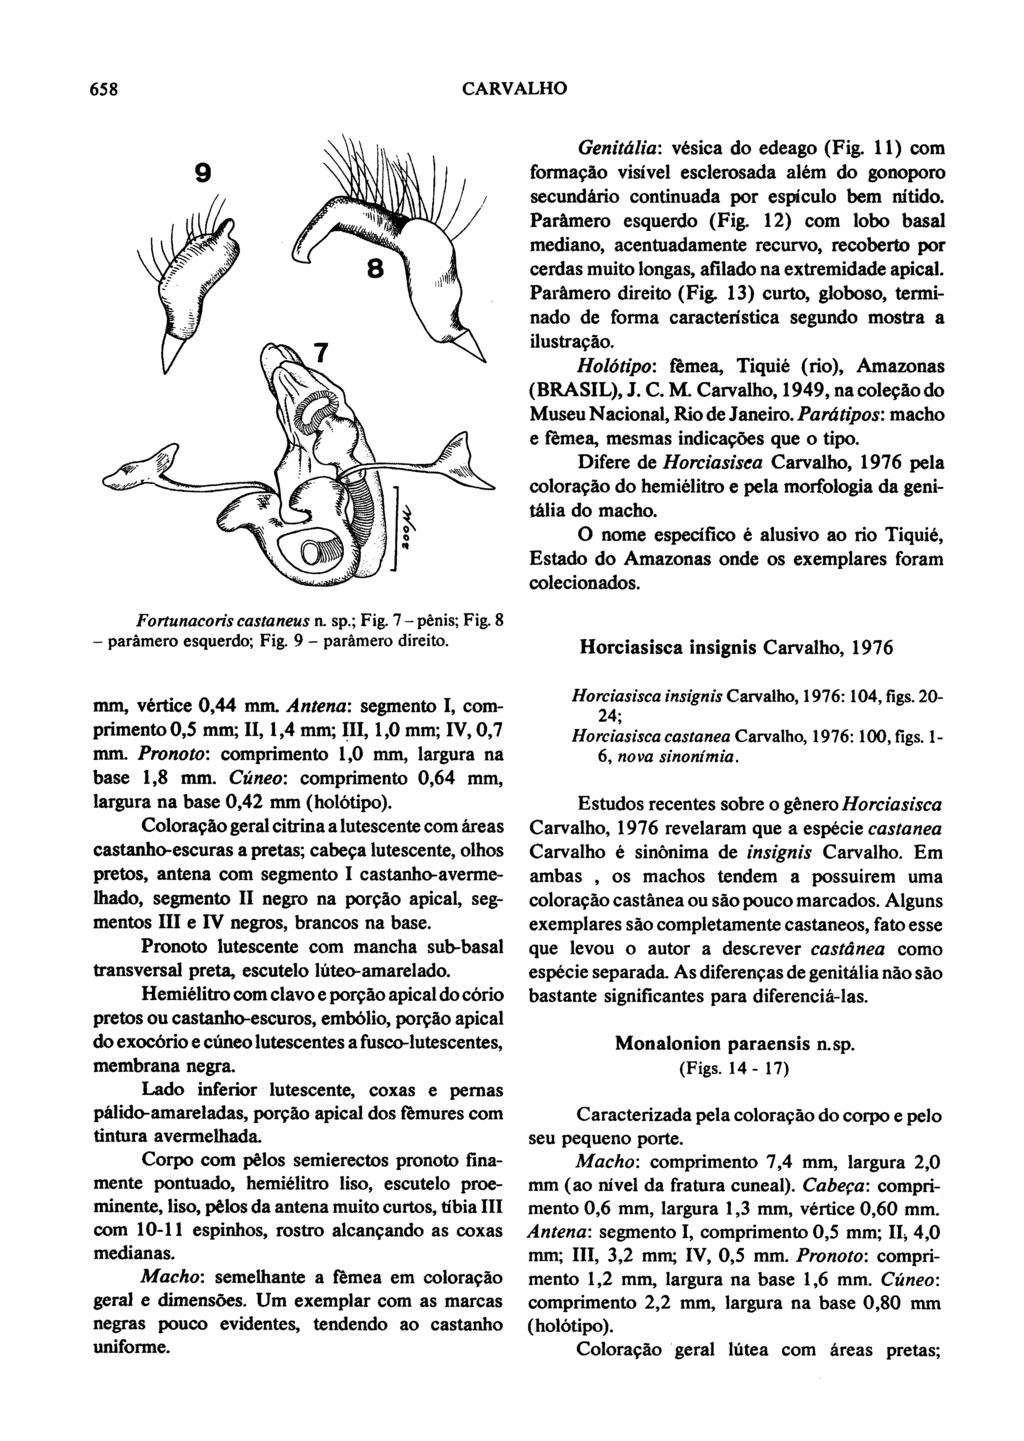 658 CARVALHO Fortunacoris castaneus a sp.; Fig. 7- penis; Fig. 8 - paramero esquerdo; Fig. 9 - paramero direito.